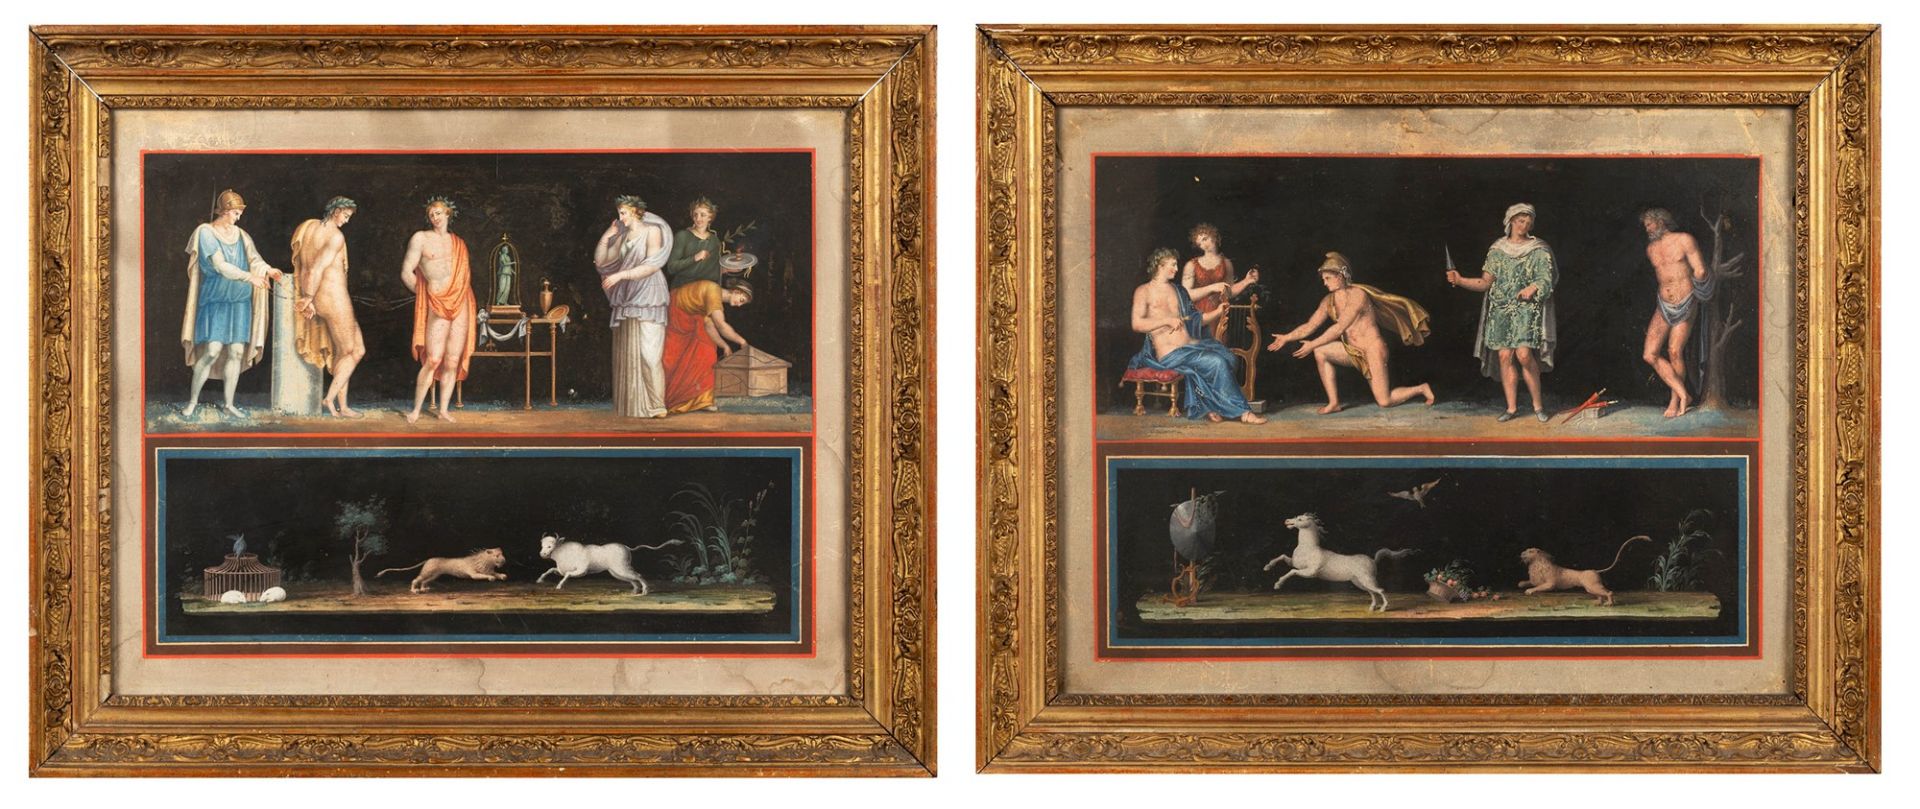 Neoclassical Artist - Two classic scenes: Roman rite; and Apollo and Marsyas